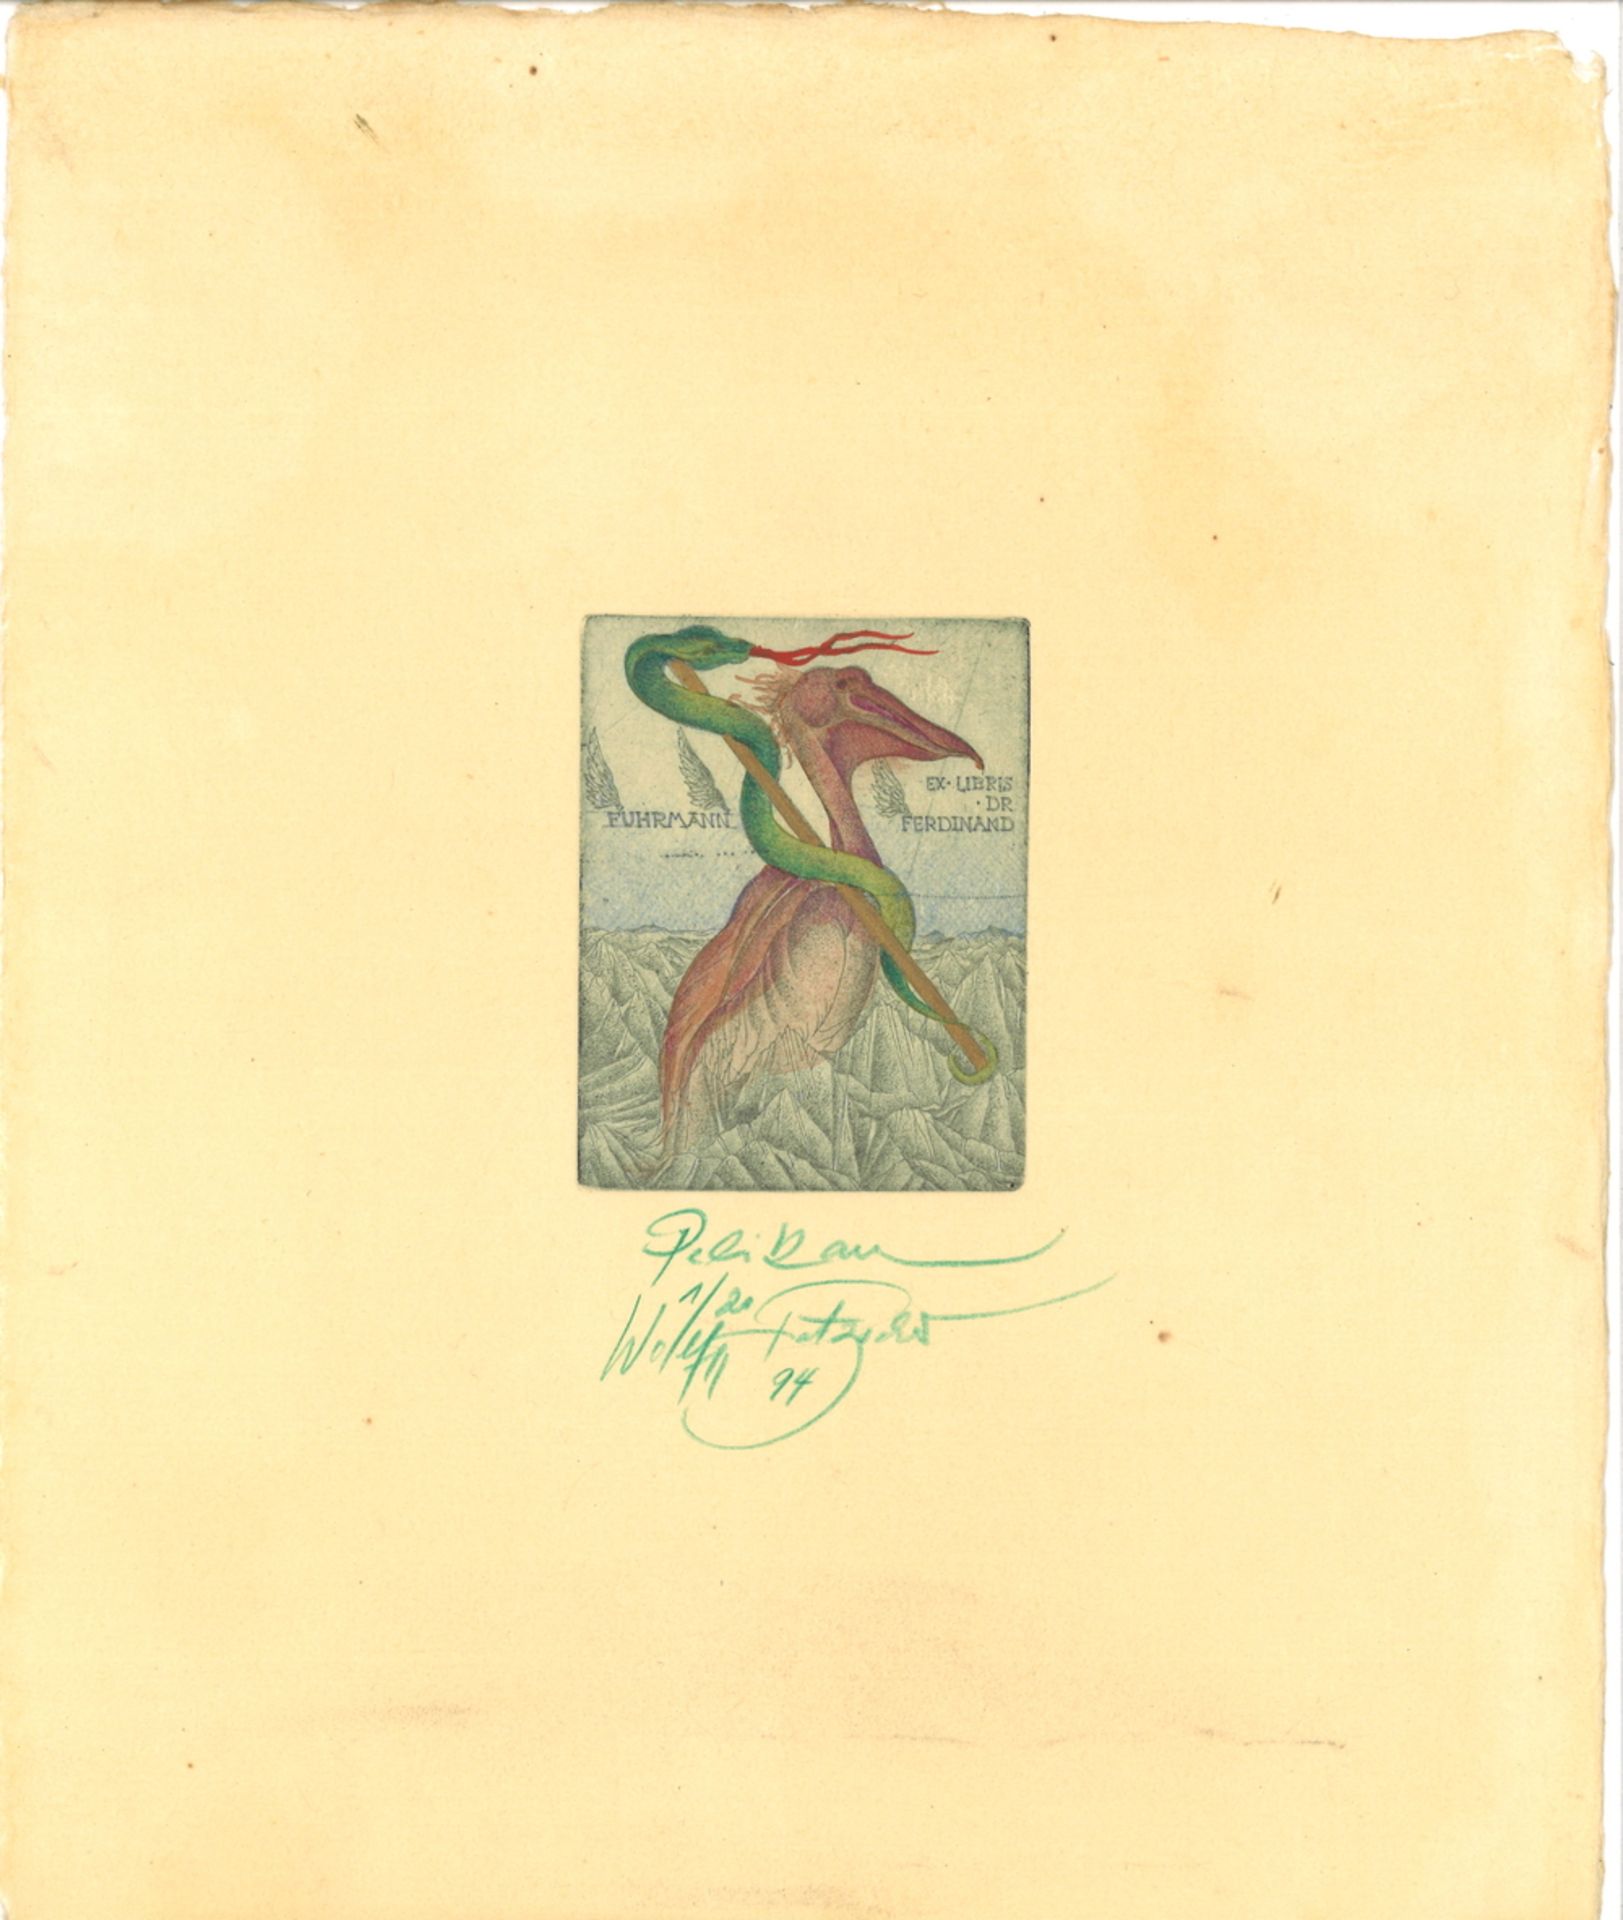 Lithografie "Pelikan" von Wolfgang Fratscher, 1/20, Signatur unten mittig 94, Fuhrmann, Ex Libris Dr